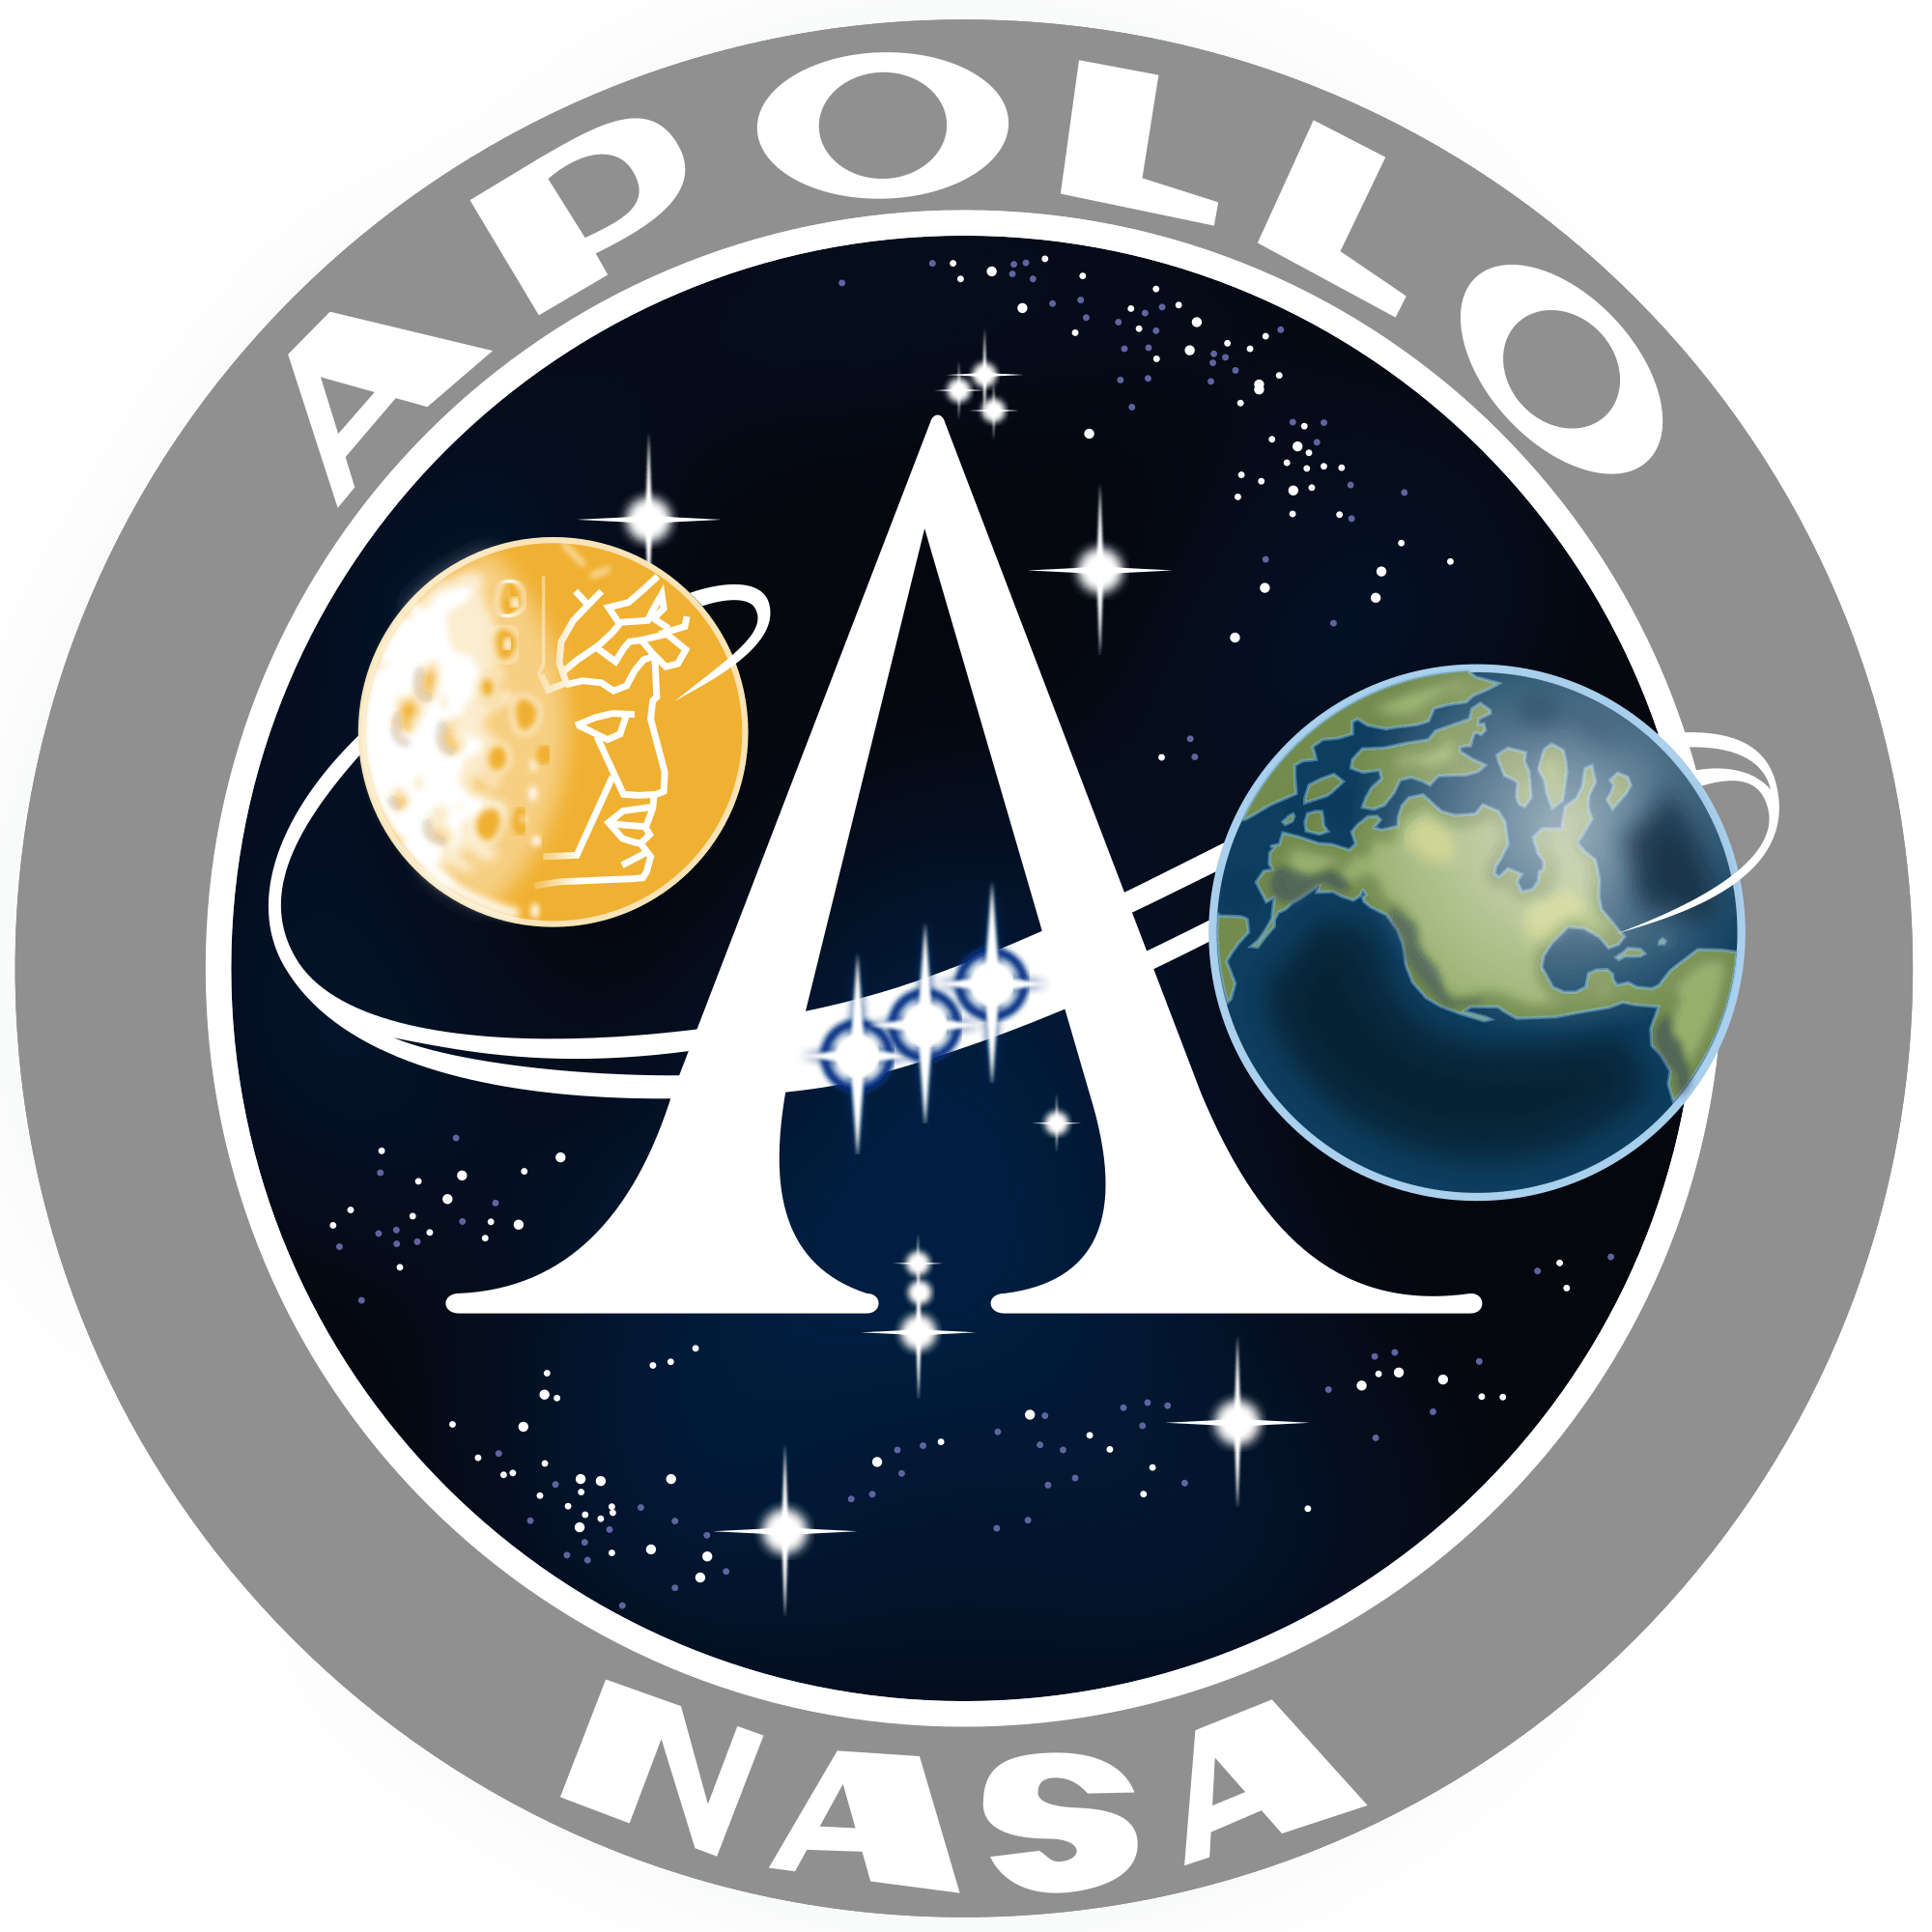 1st NASA Logo - Apollo program